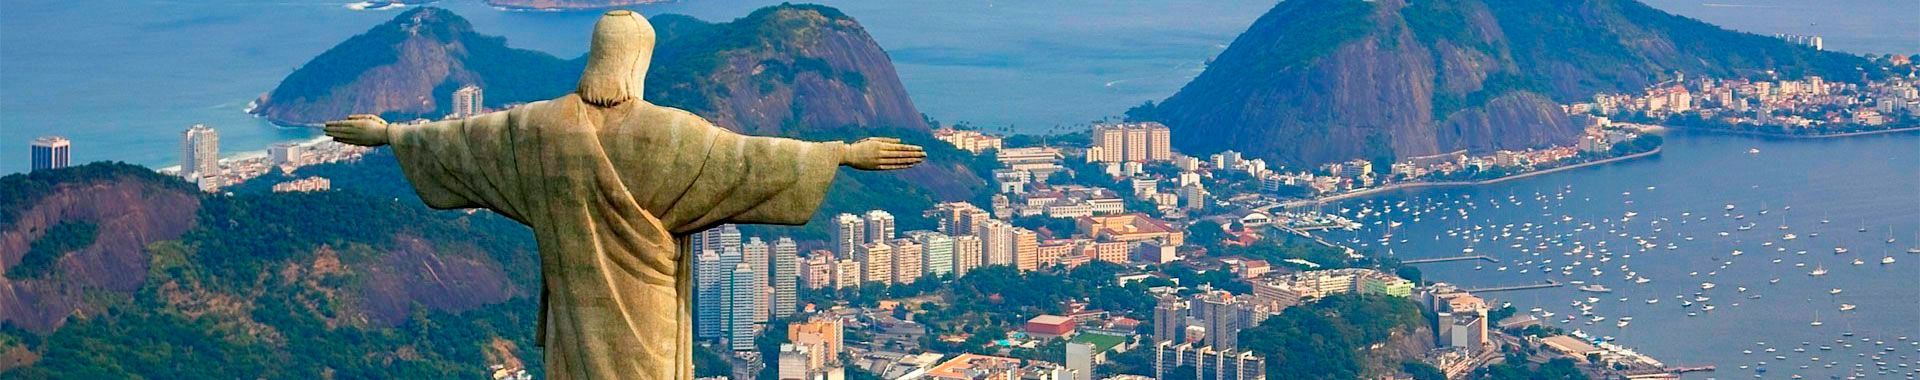 Brasil - Rio - Lugares